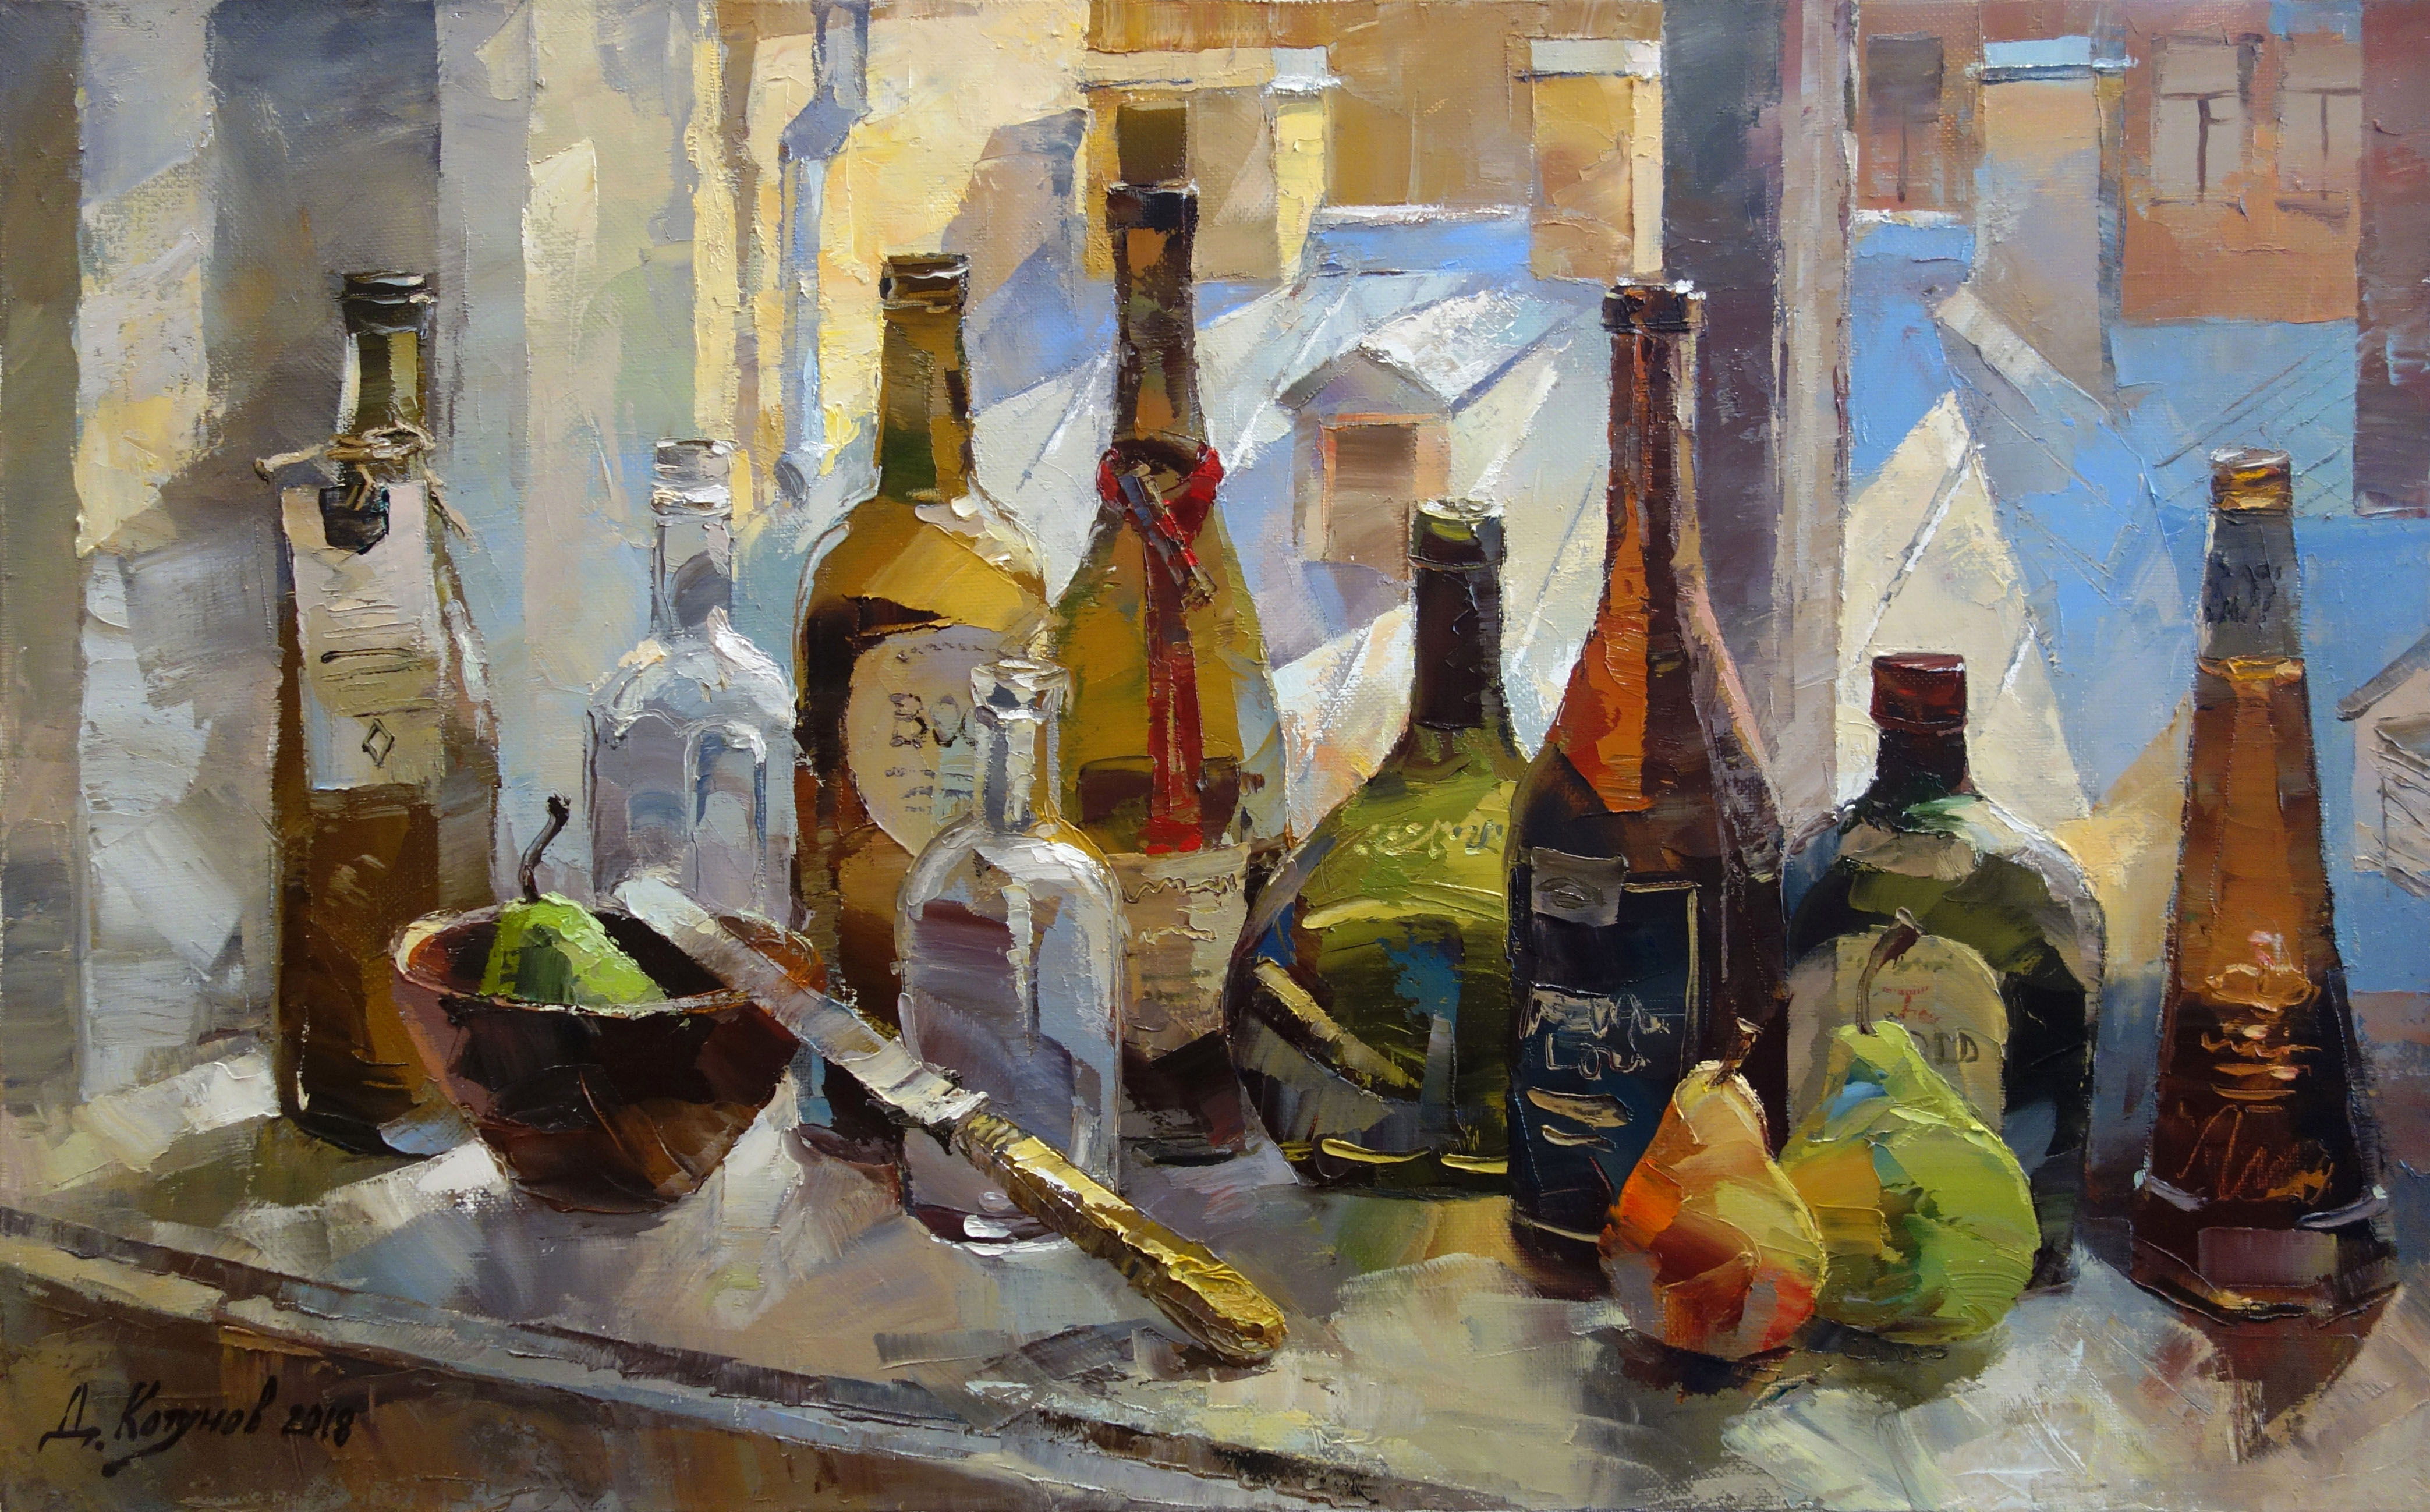 Bottles on the Window - 1, Dmitry Kotunov, Buy the painting Oil